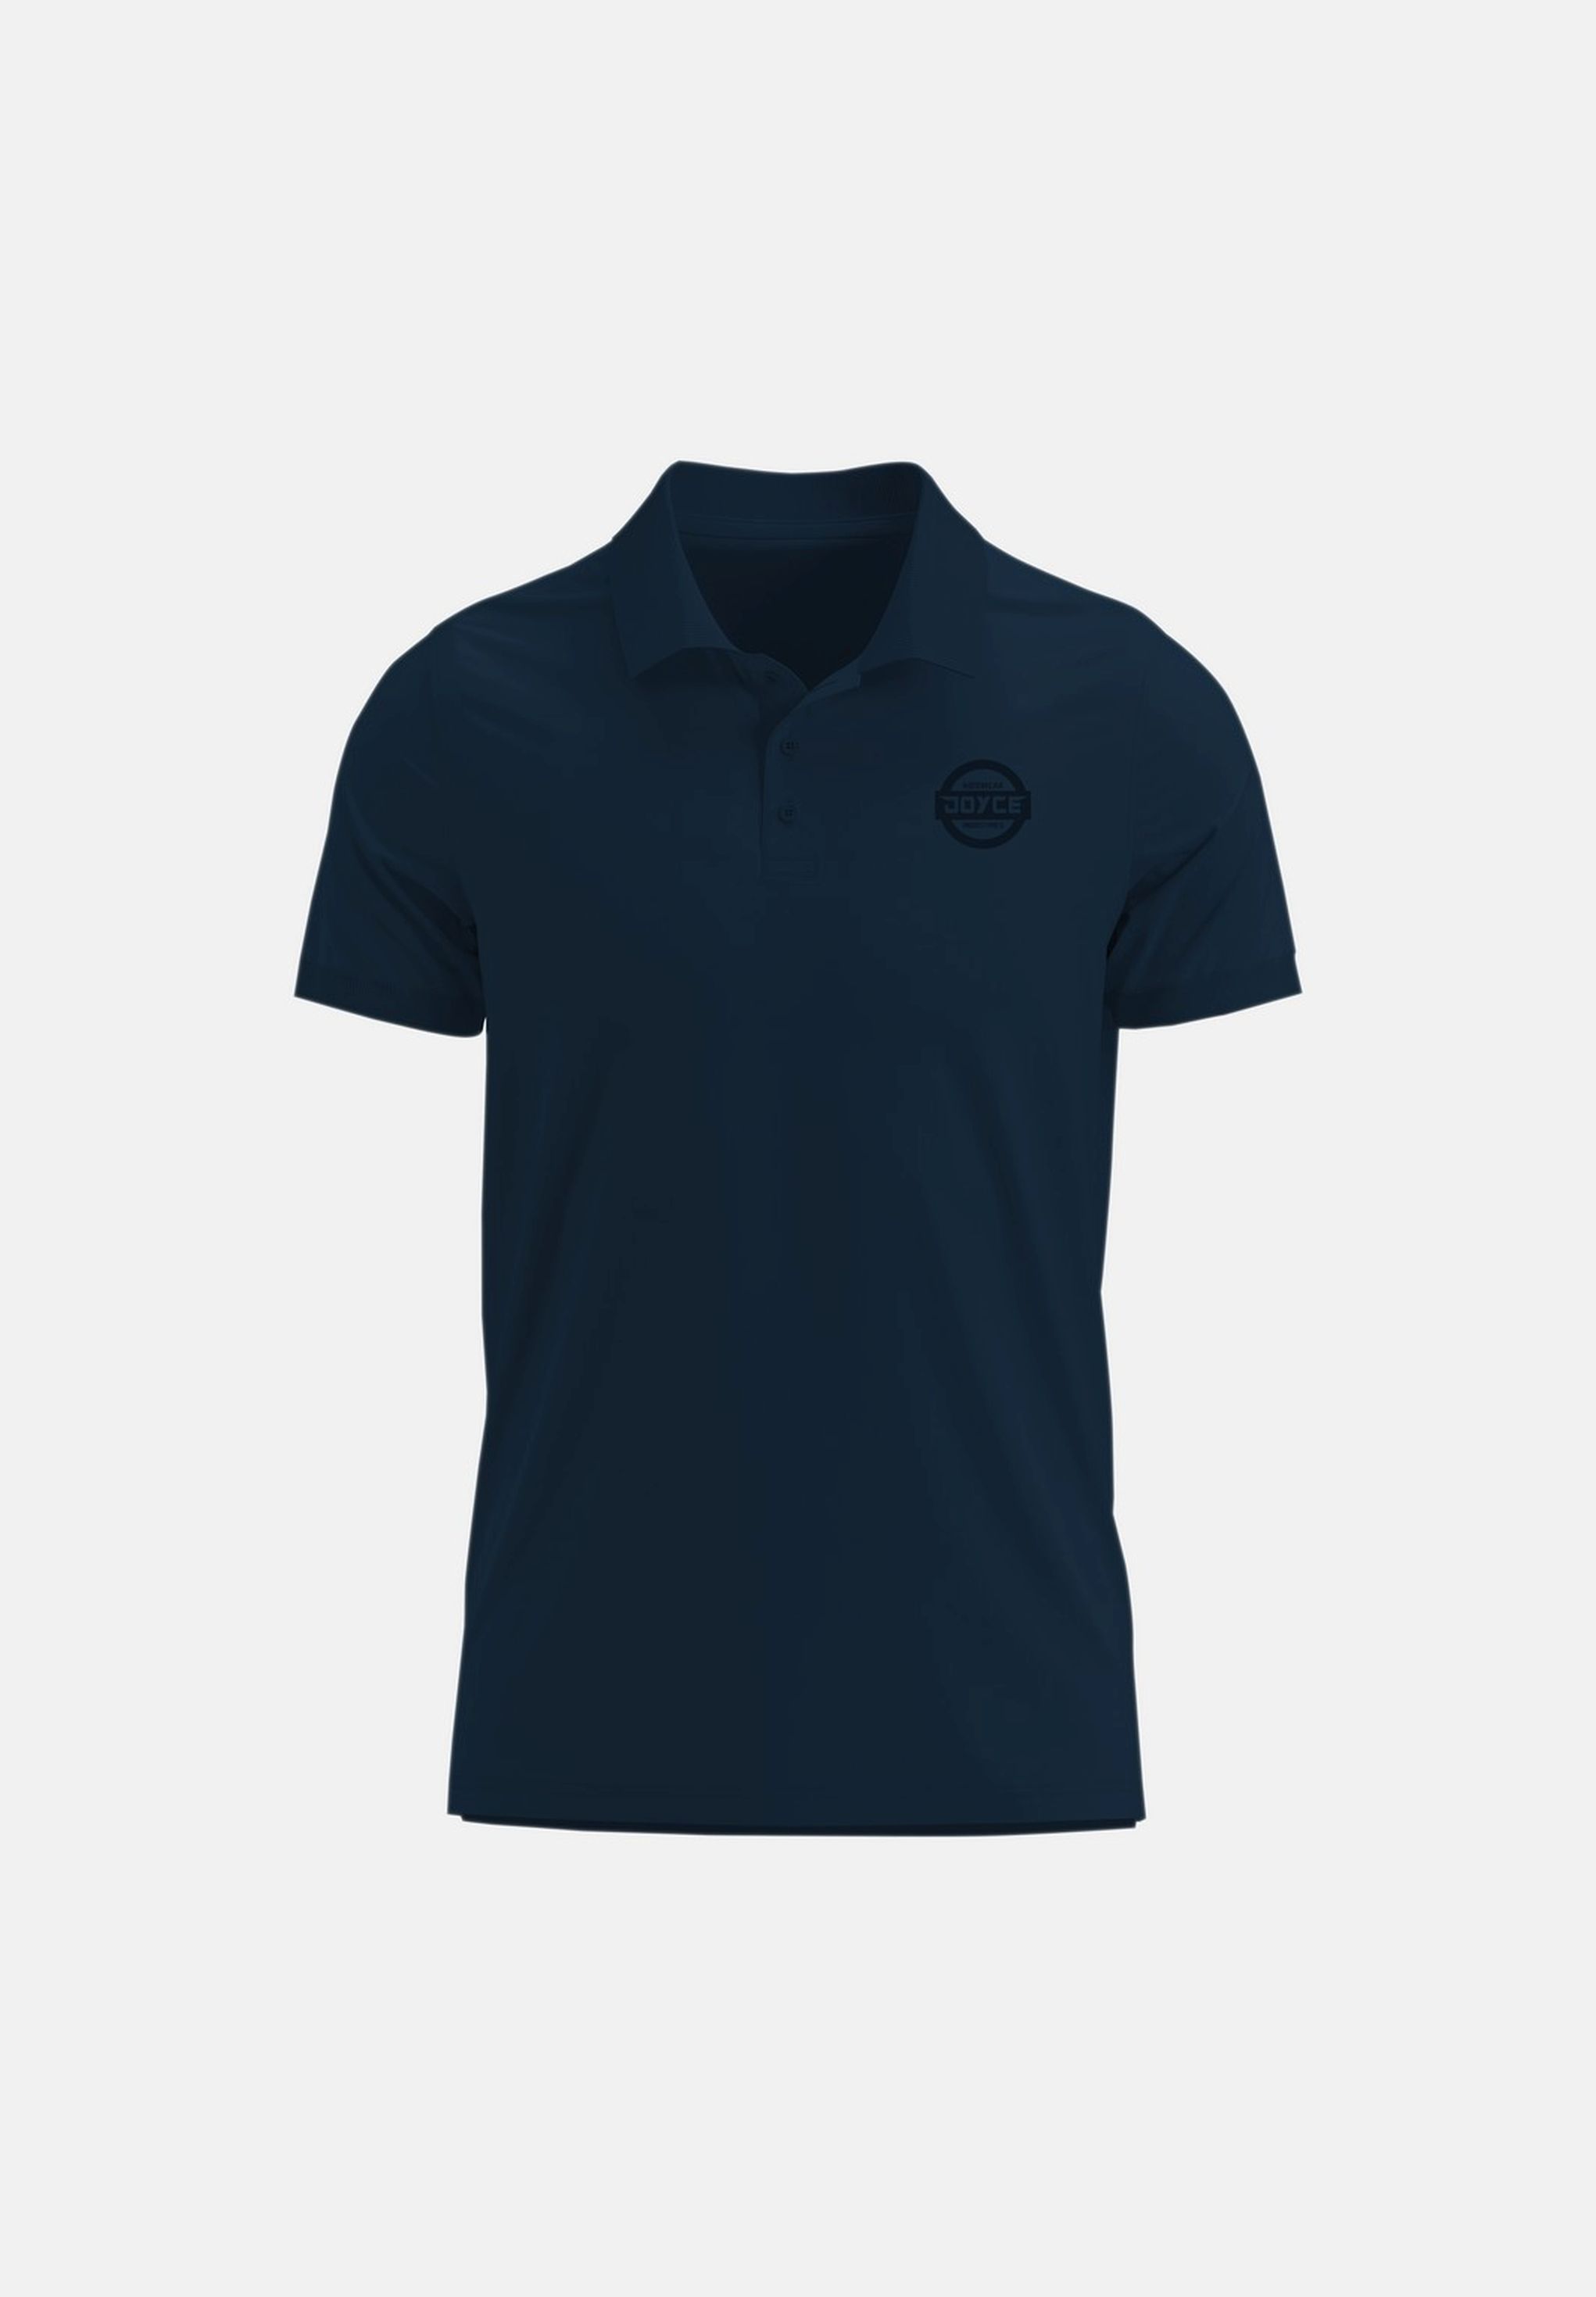 Chlapecké tričko s límečkem "POLO"/Modrá Barva: Modrá, Velikost: vel. 8 (126/132 cm)